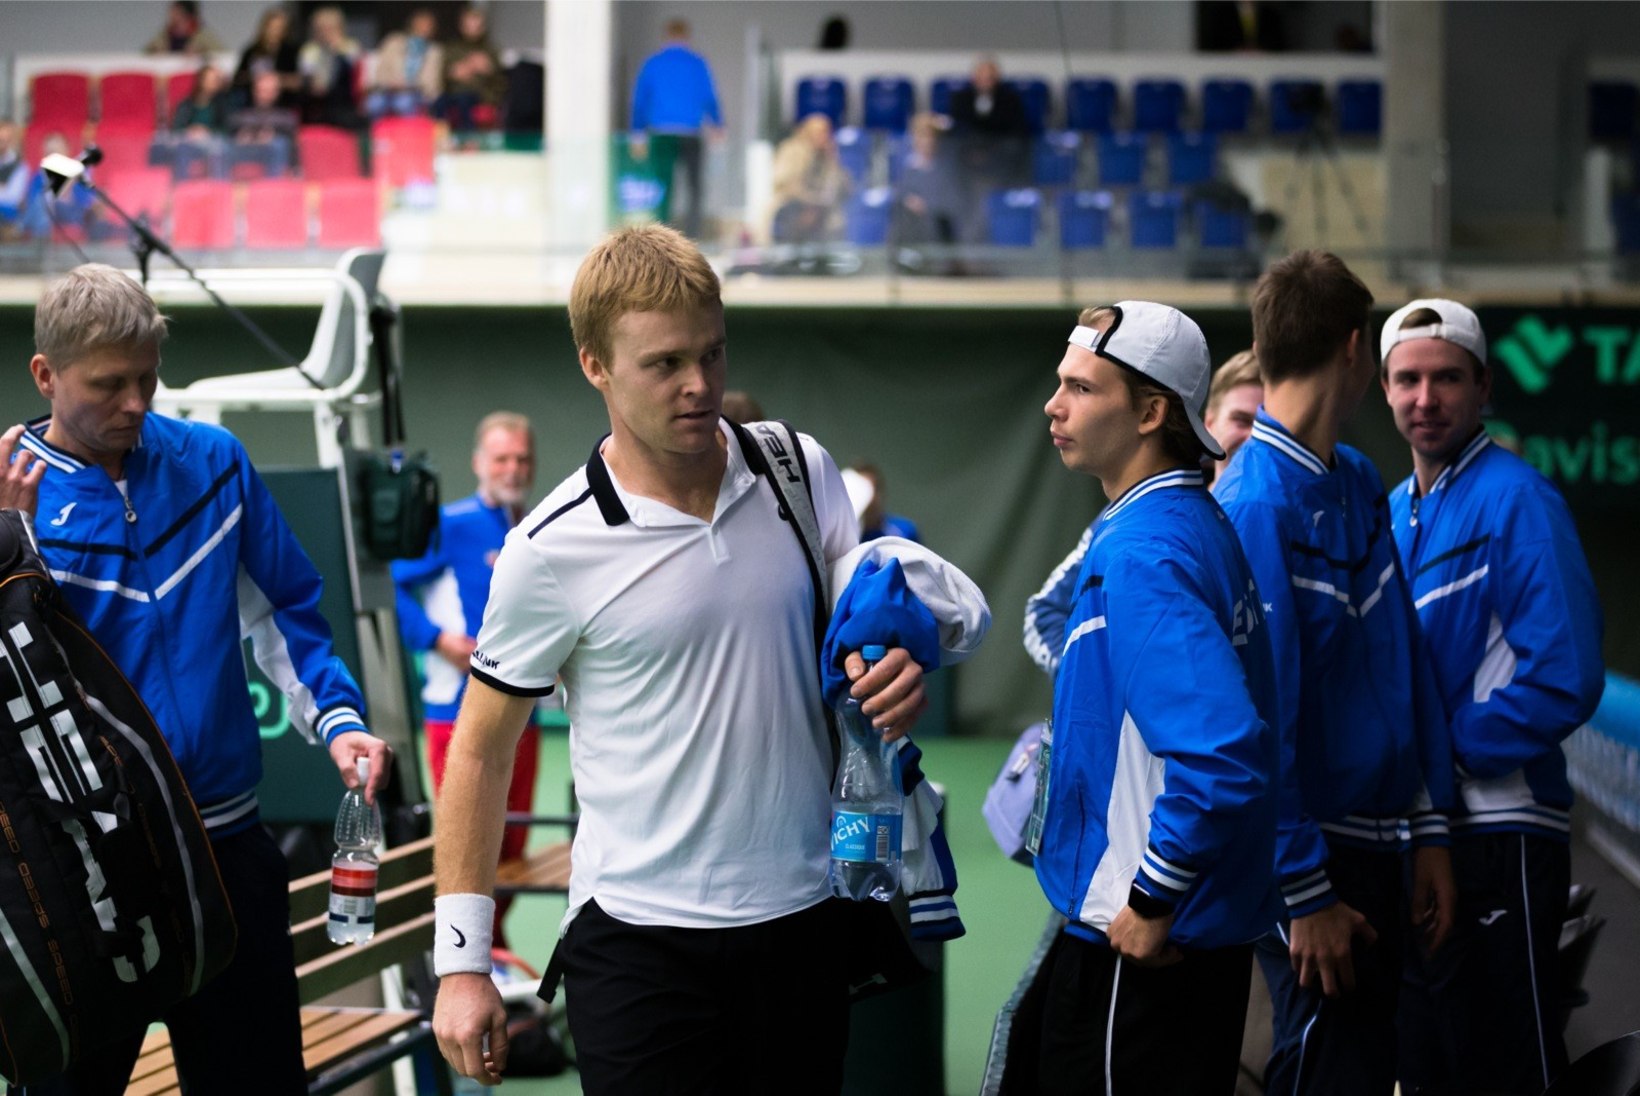 GALERII | Eesti tennisemeeskond alustas kodust Davis Cupi turniiri kindla võiduga